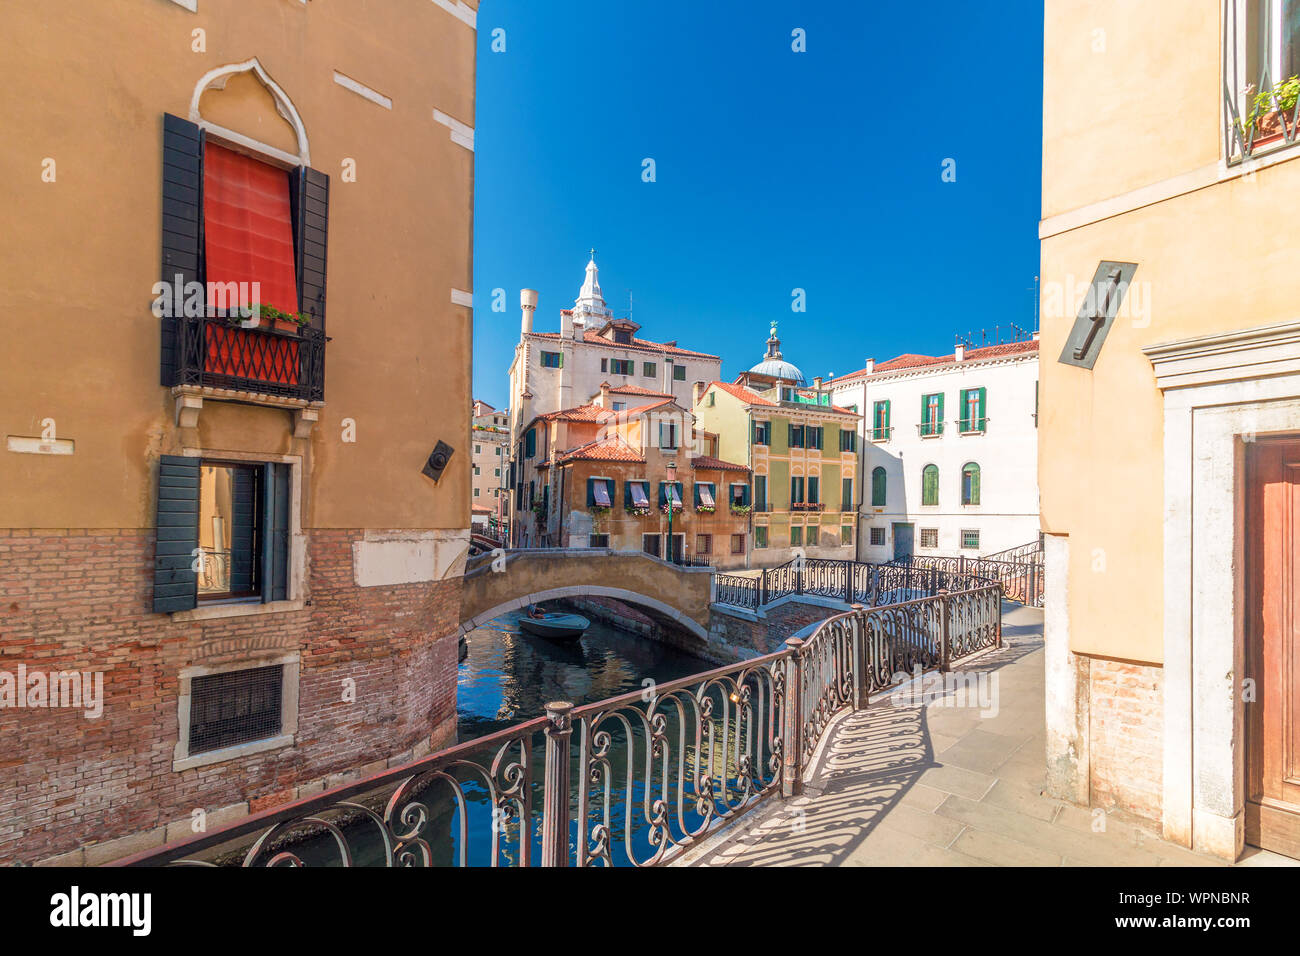 Vue sur le canal de Venise et la rue avec de belles vieilles maisons colorées Banque D'Images